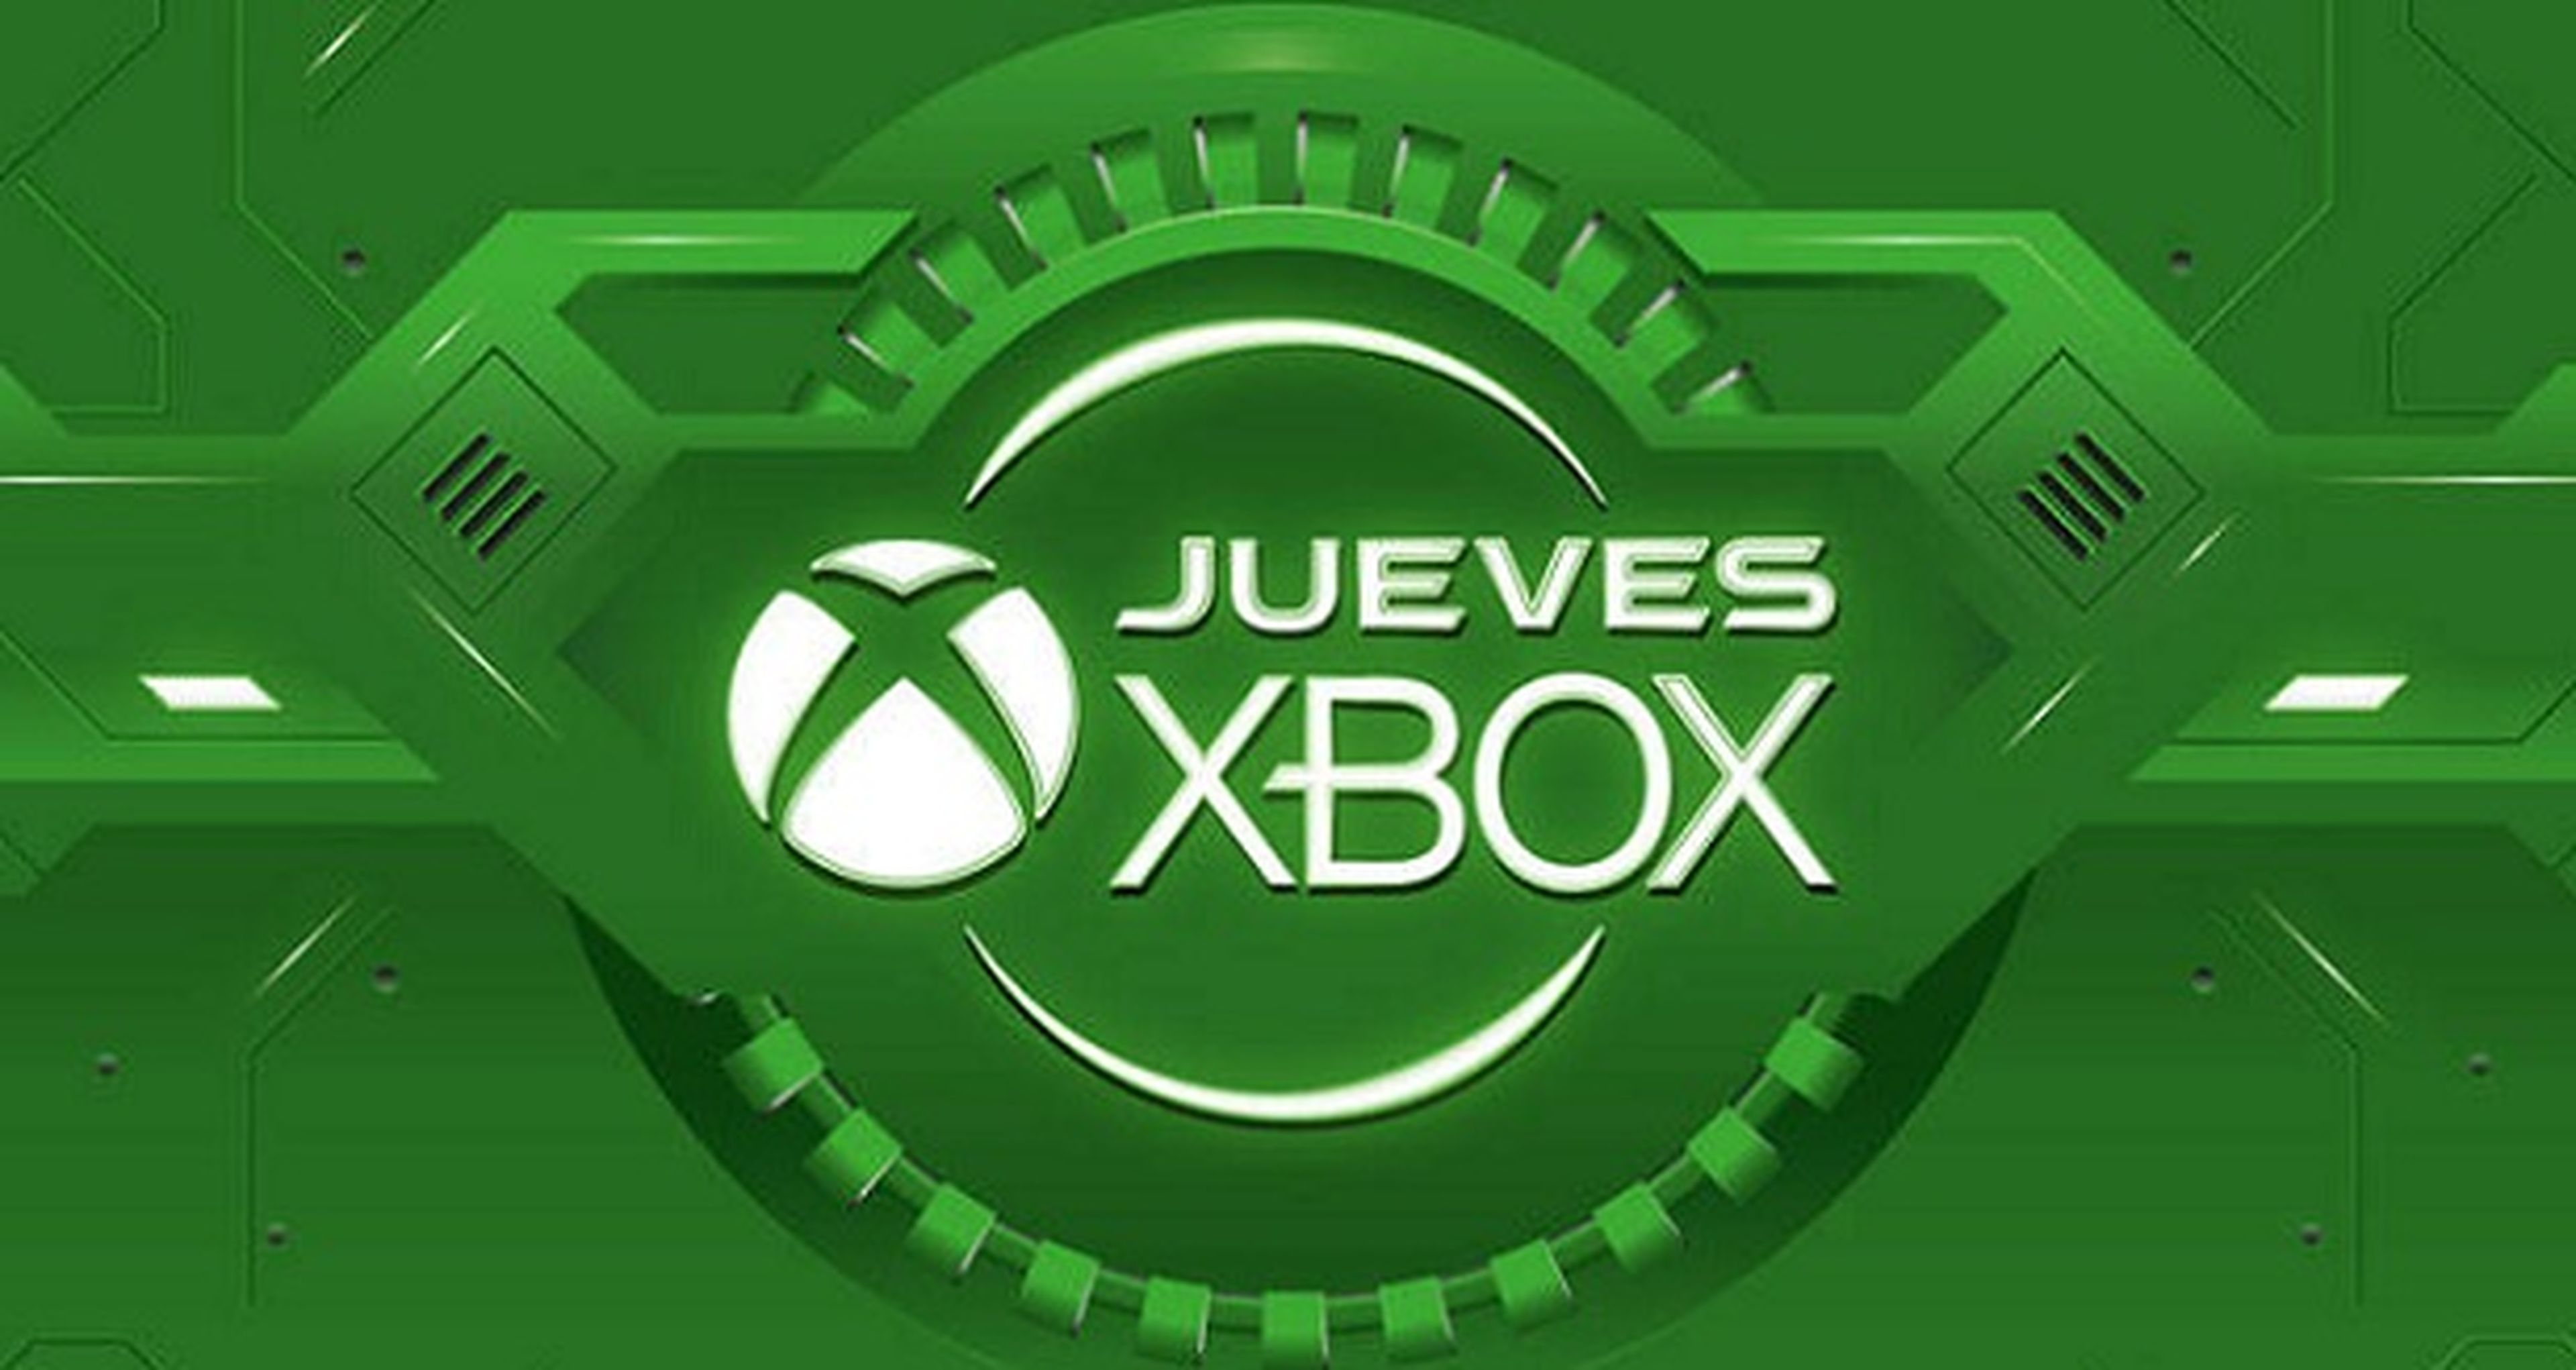 Jueves Xbox en GAME: Ofertas del 16/07/2015